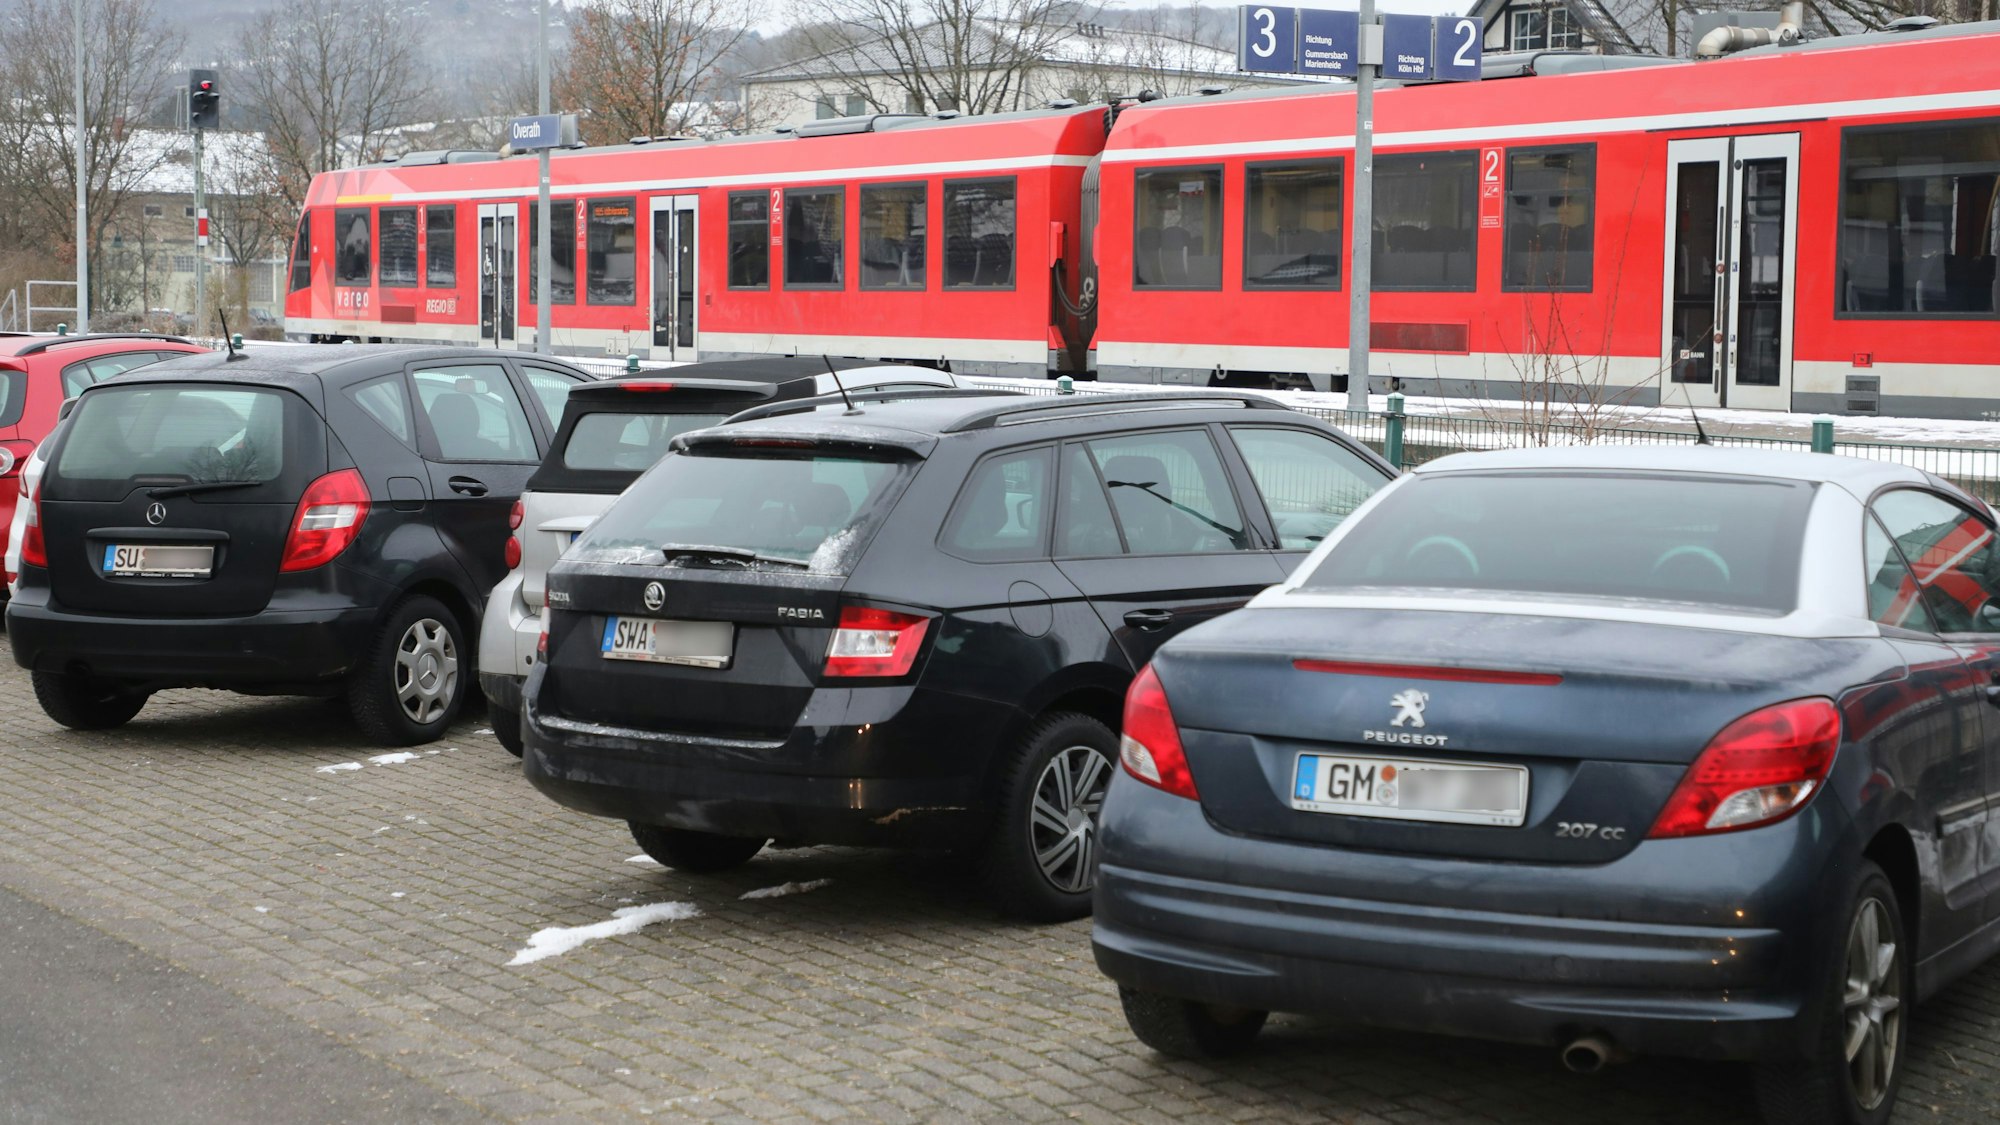 Autos stehen auf einem Parkplatz am Overather Bahnhof, dahinter ist eine abfahrbereite Regionalbahn zu sehen.